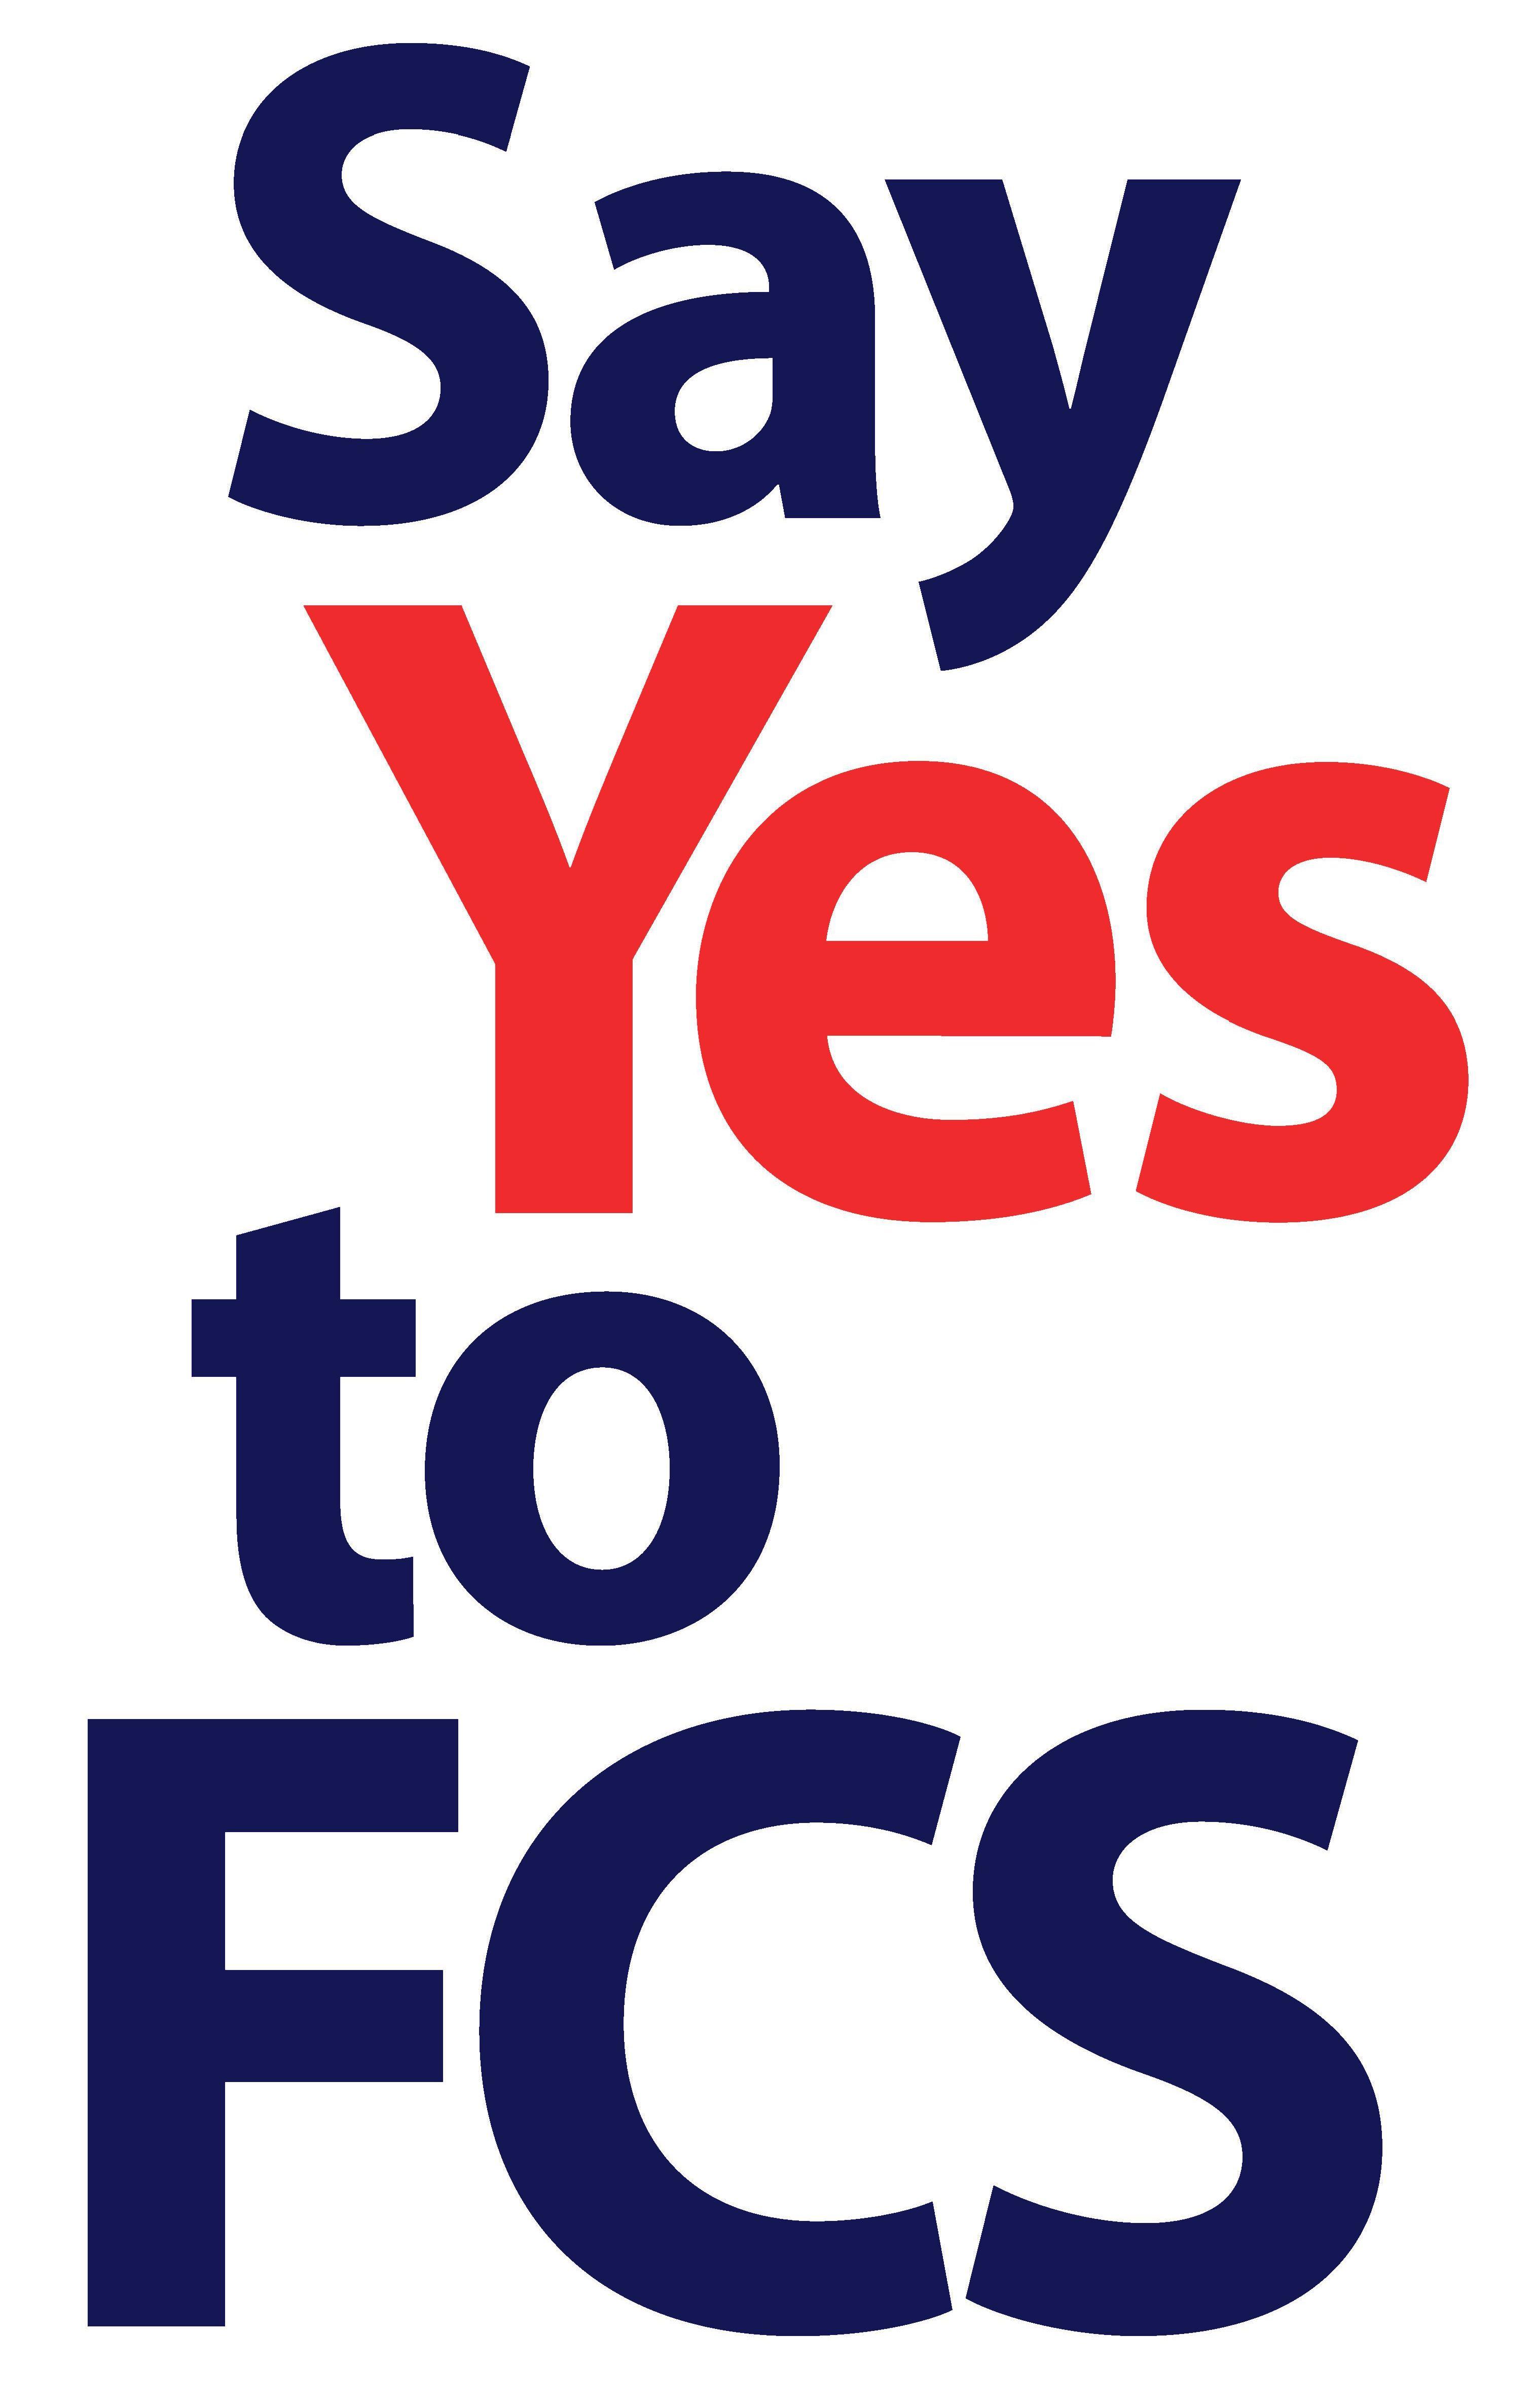 FACS Logo - Free Logos and Downloads - SayYes